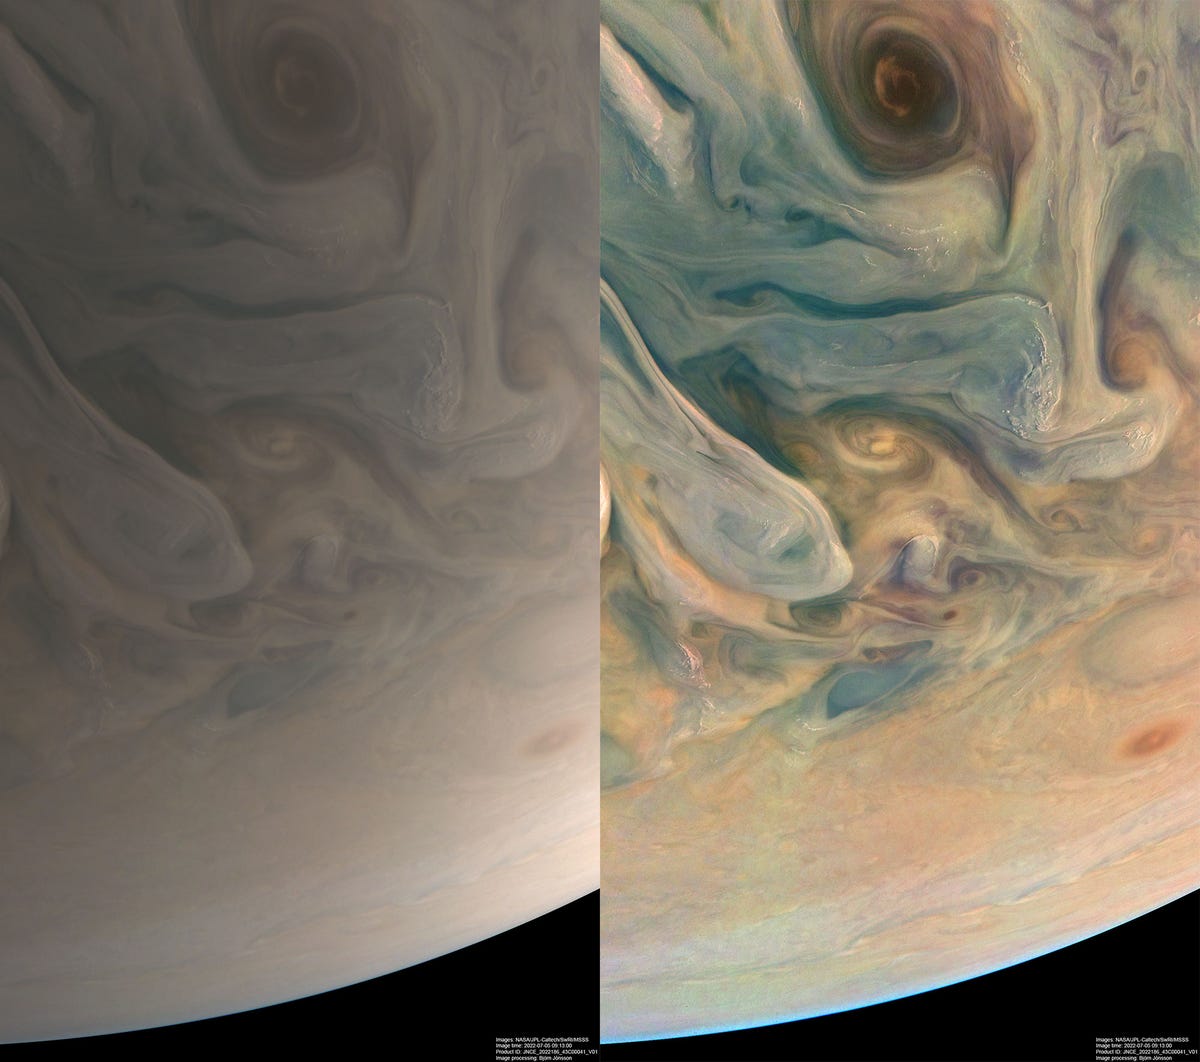 Sur la gauche se trouve une version vaporeuse et beige de Jupiter.  Sur la droite se trouve la même image, sauf avec des teintes bleues, orange et jaunes.